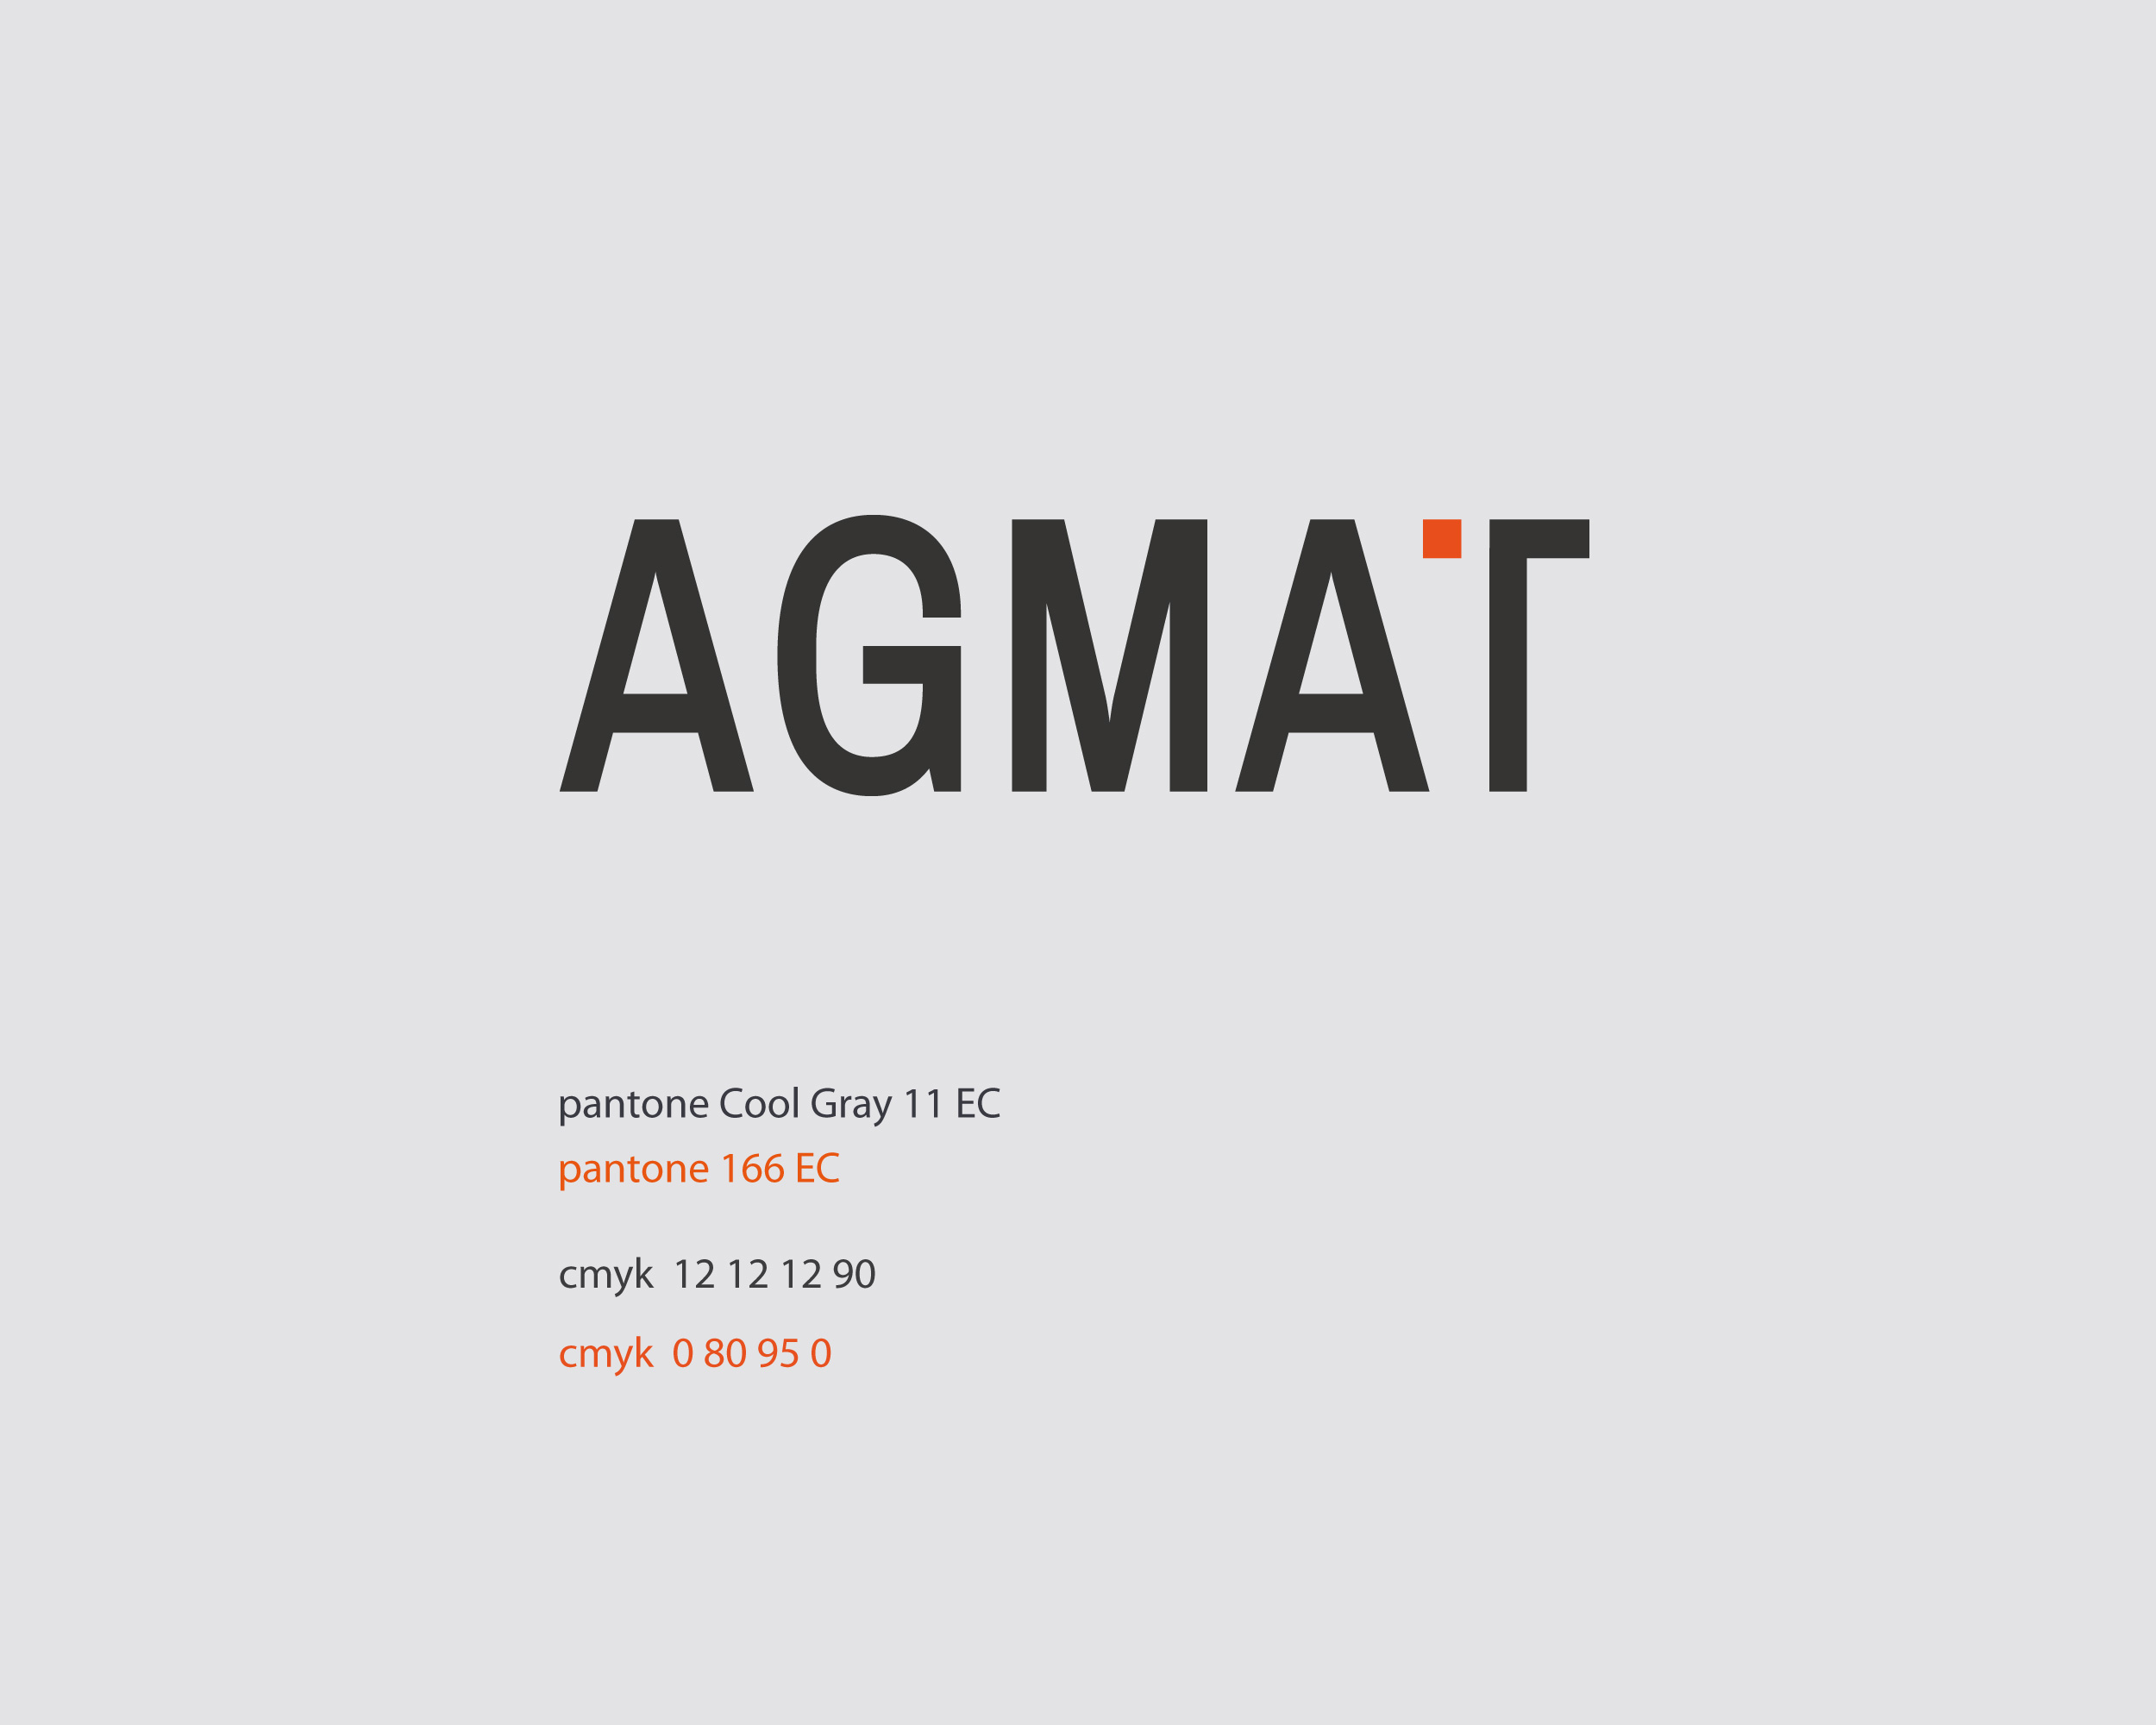 identyfikacja wizualna Produkcja reklamy Agmat 3